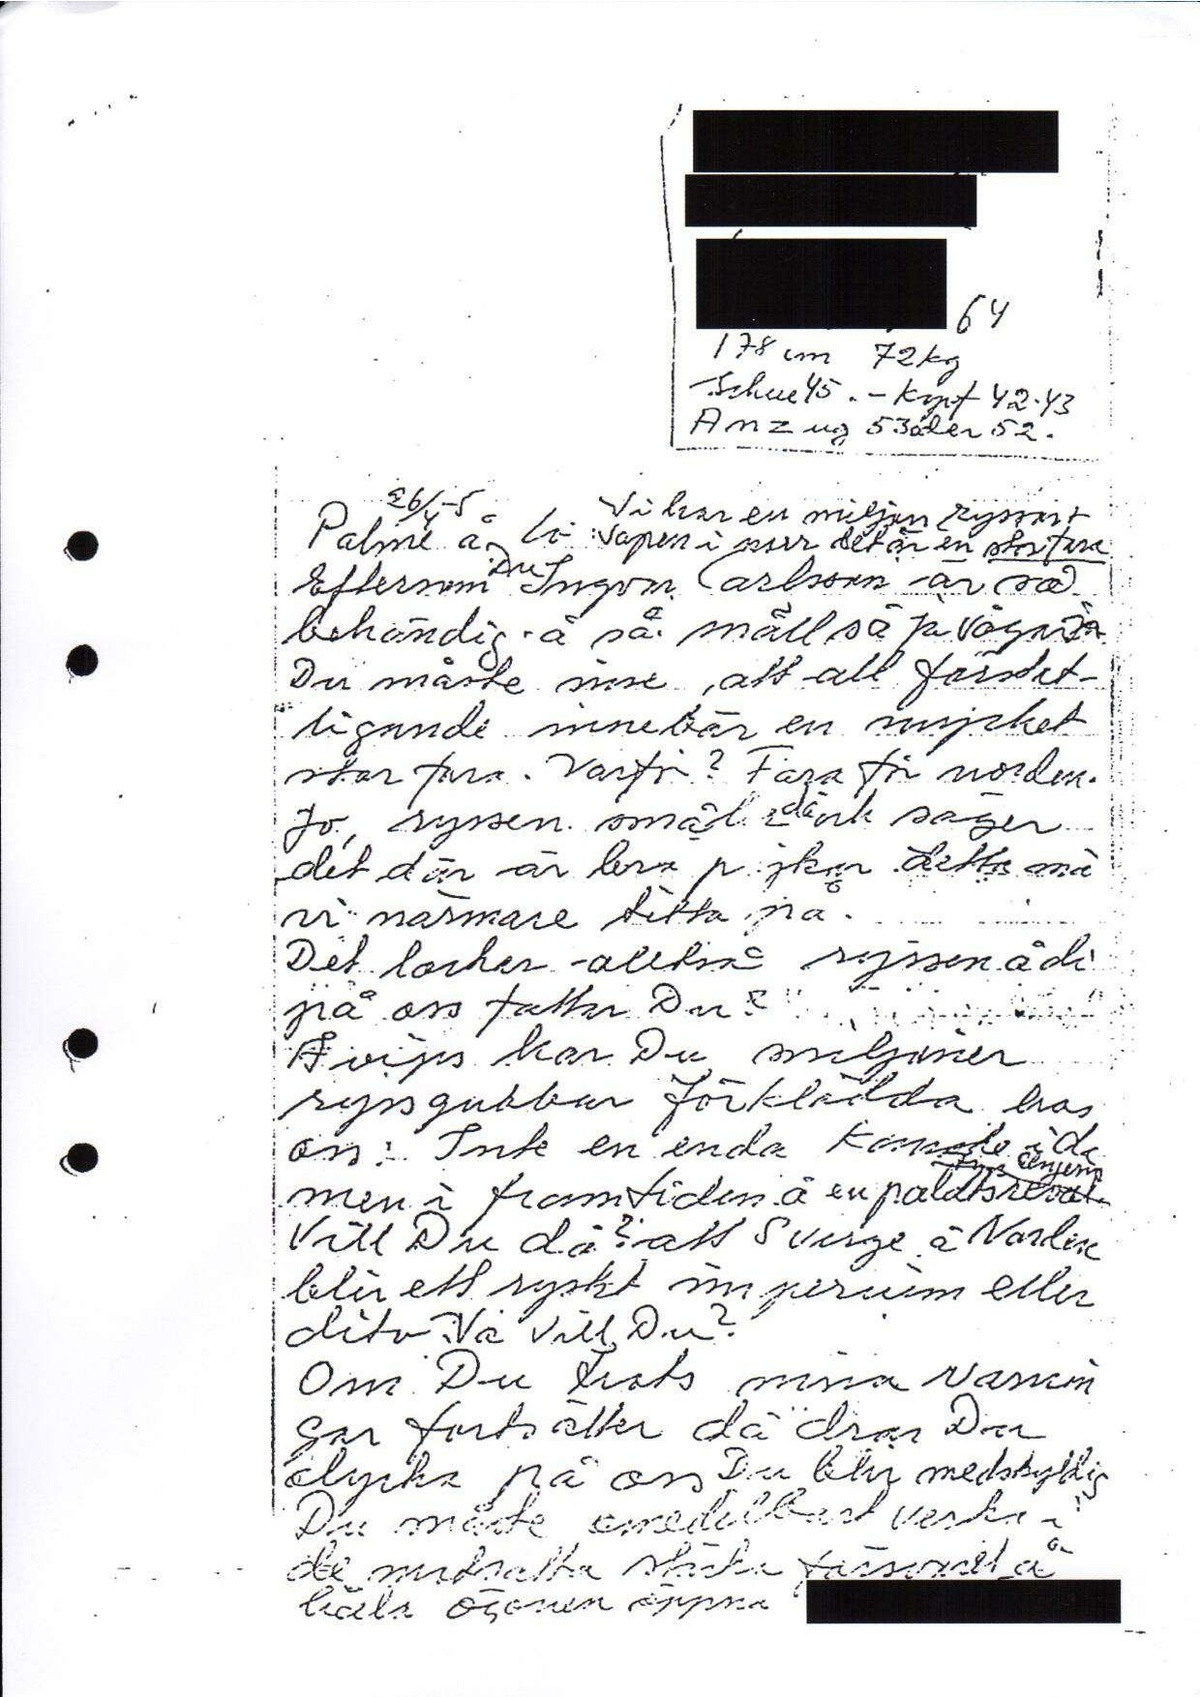 Pol-1989-12-05 D11509-01 Erkännanden Palmemordet.pdf